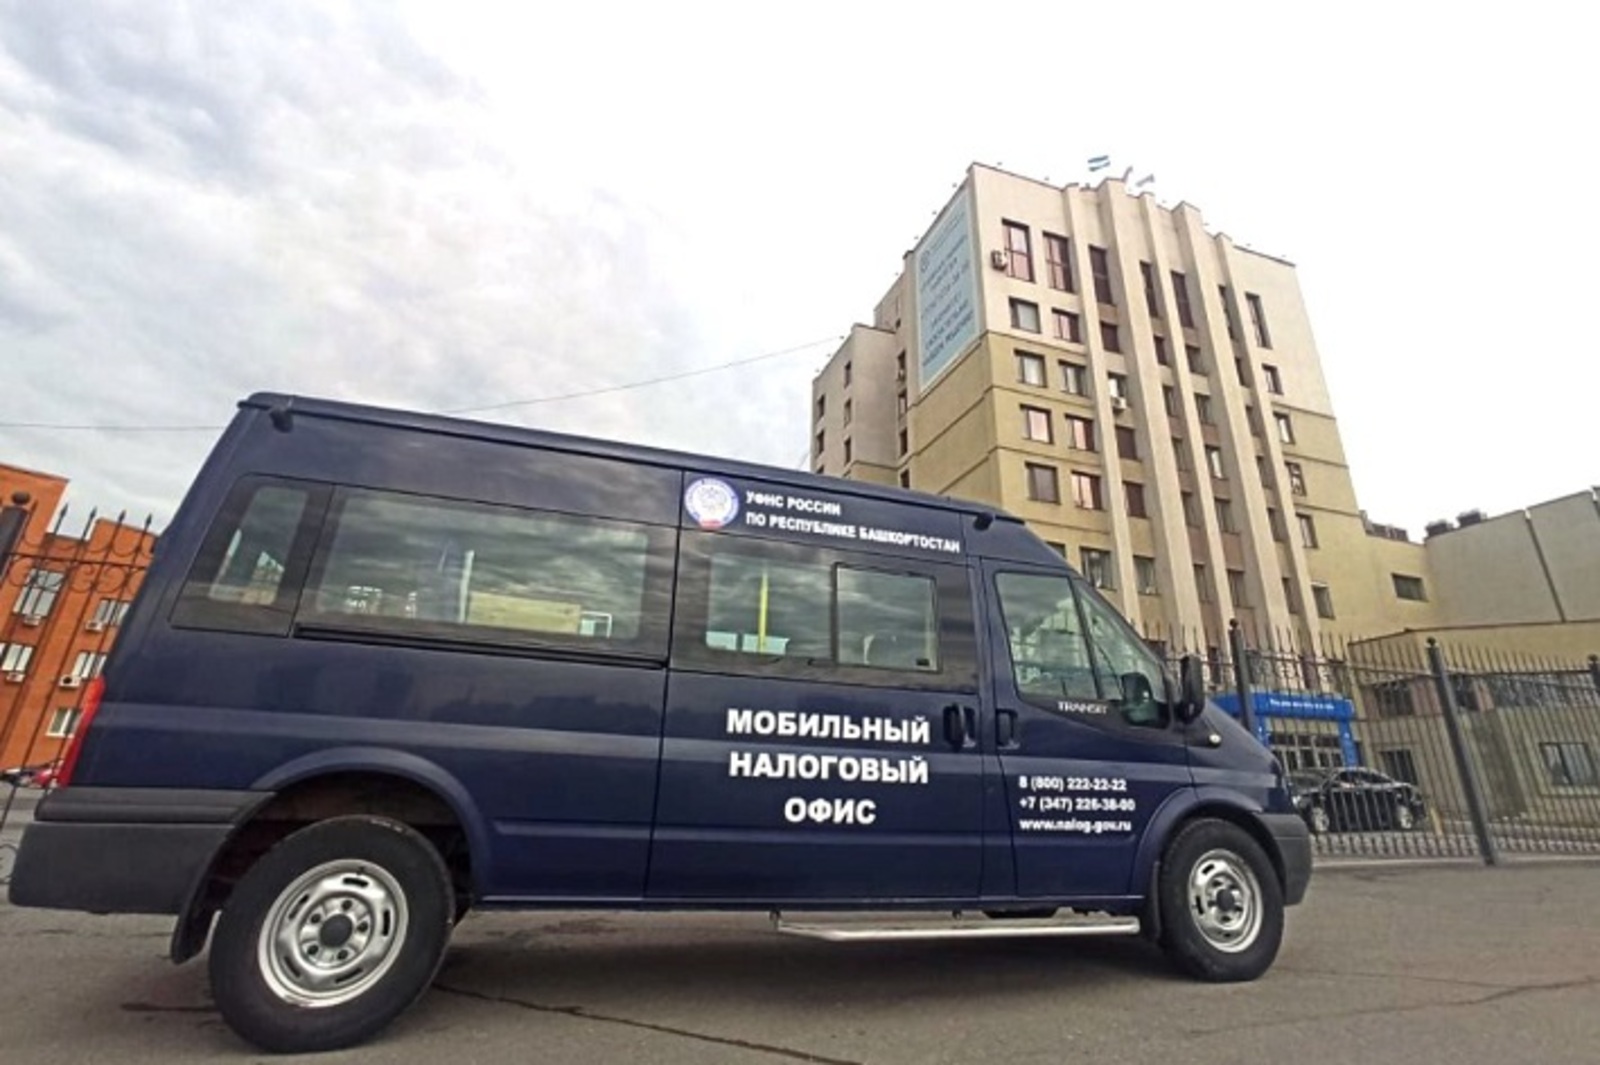 В Башкирии запустили мобильные налоговые офисы